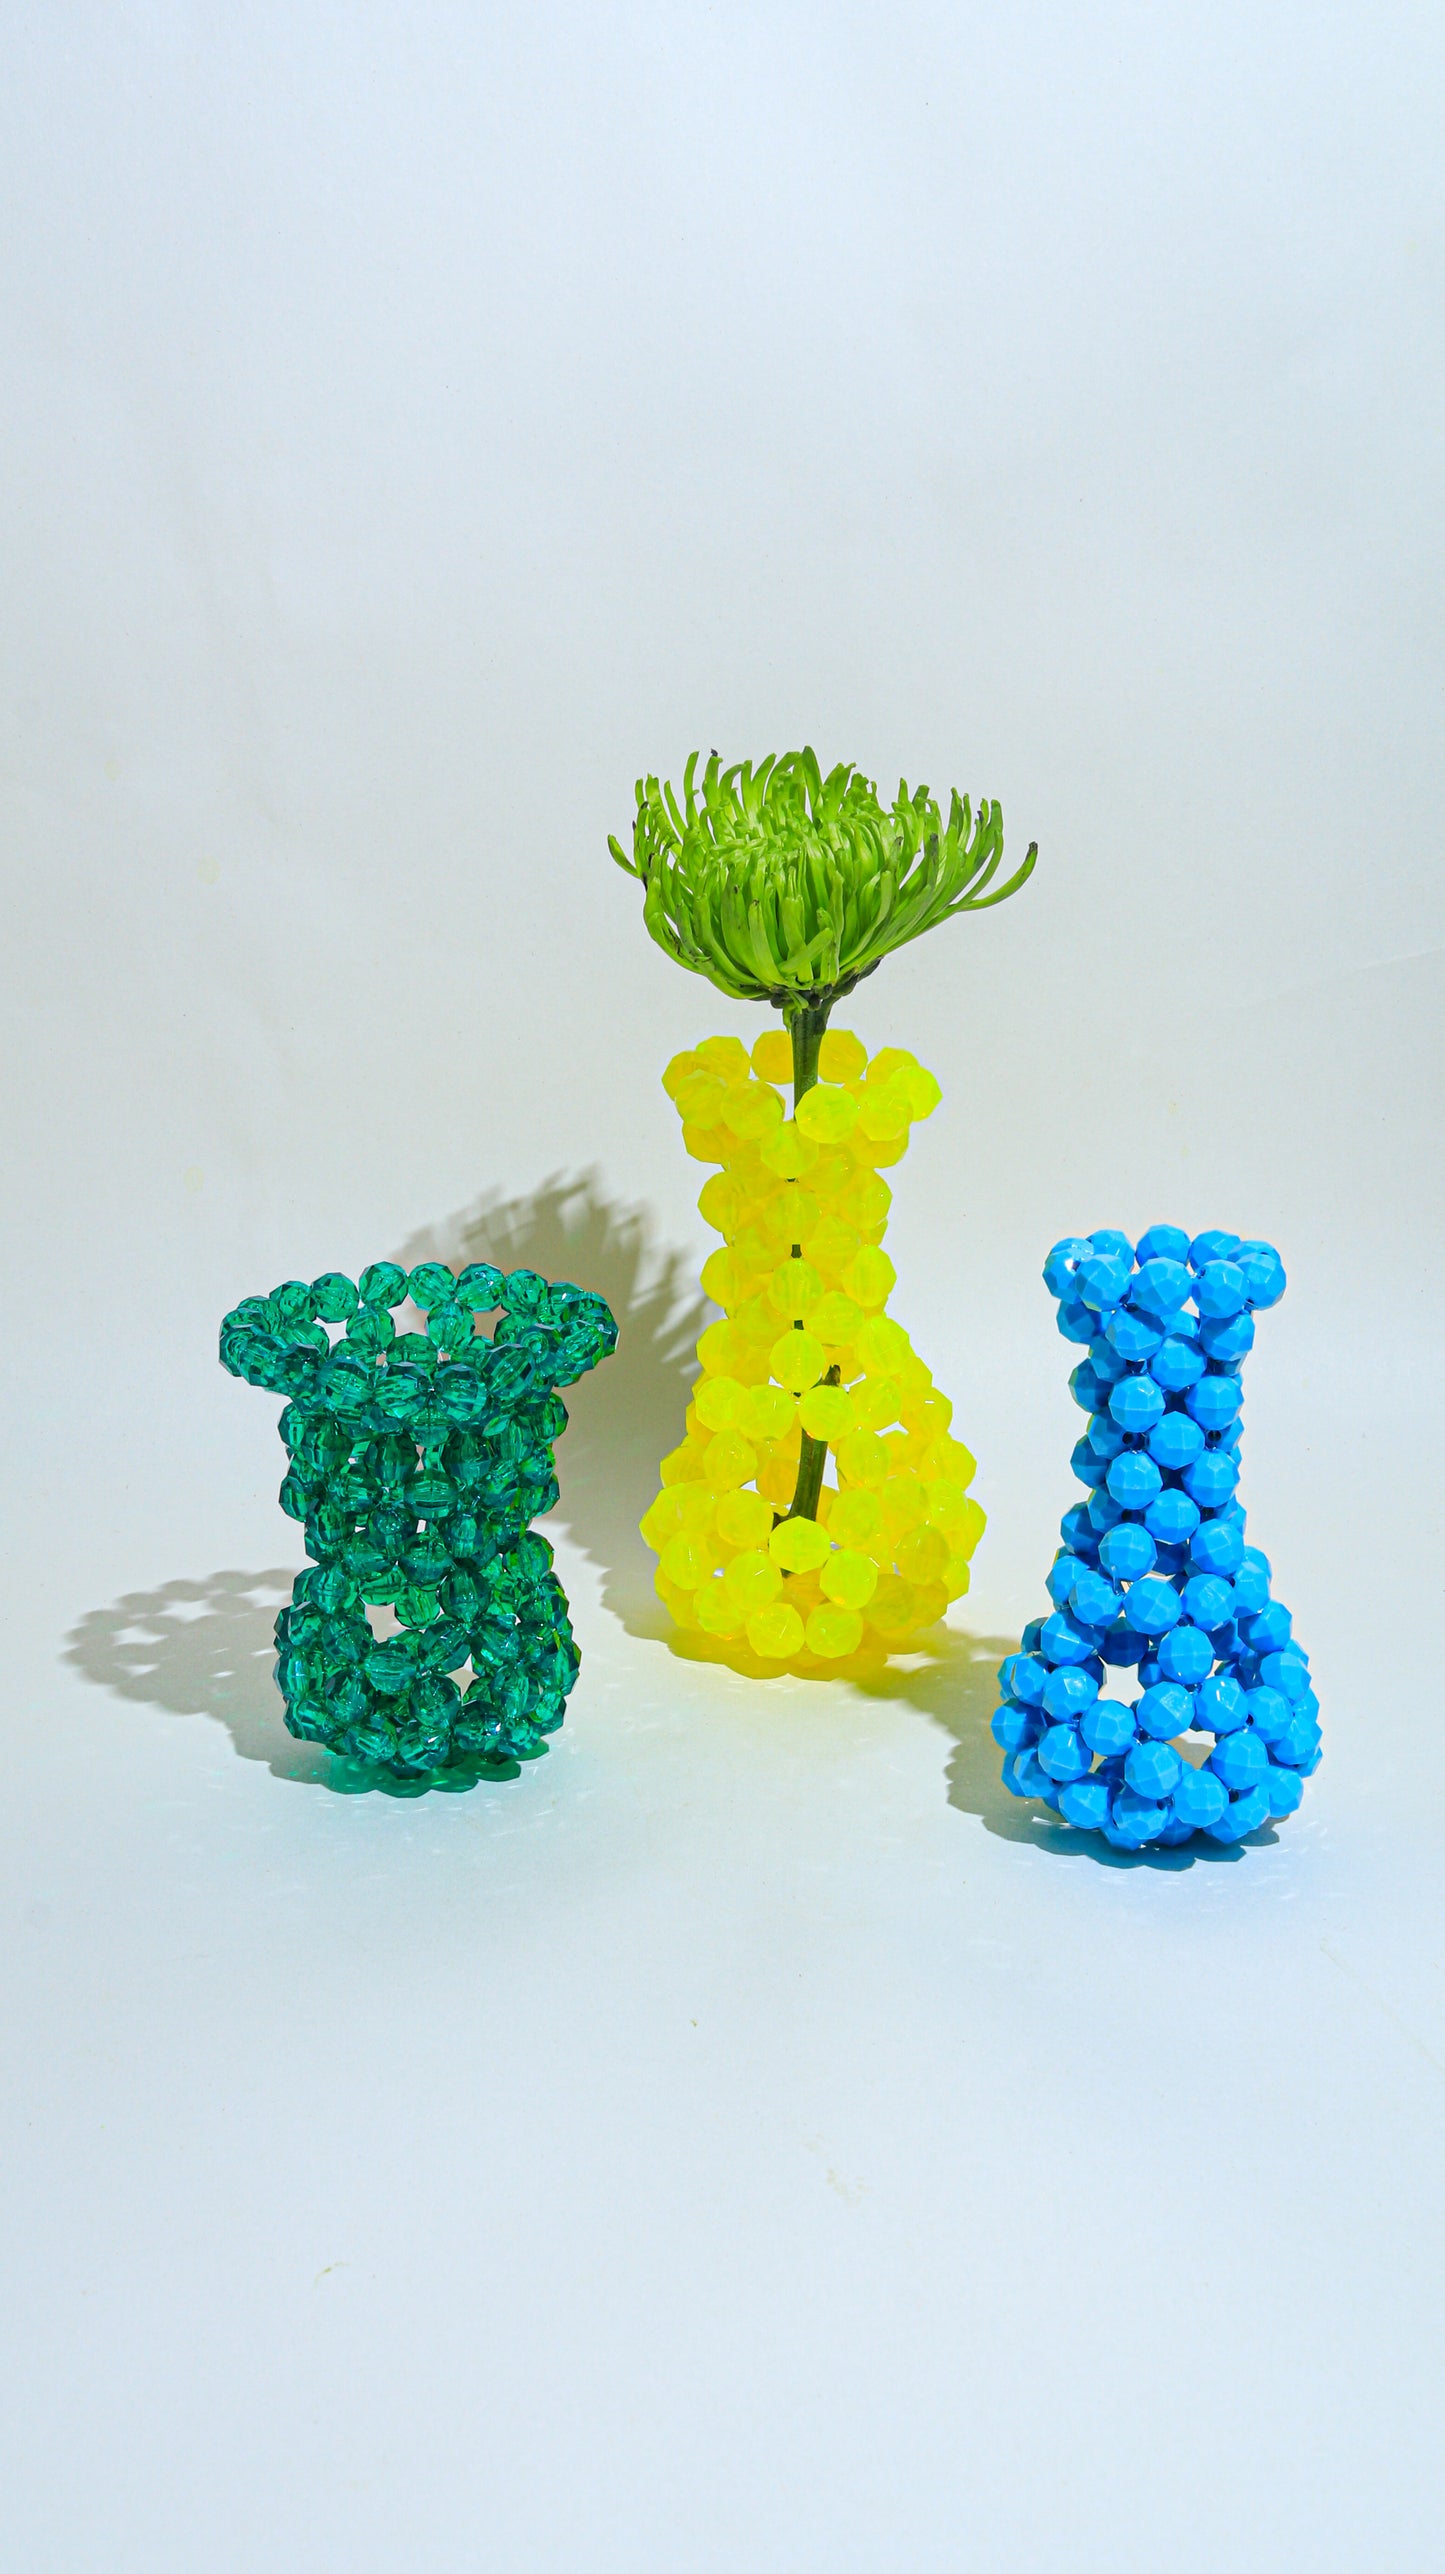 Single Stem Vase